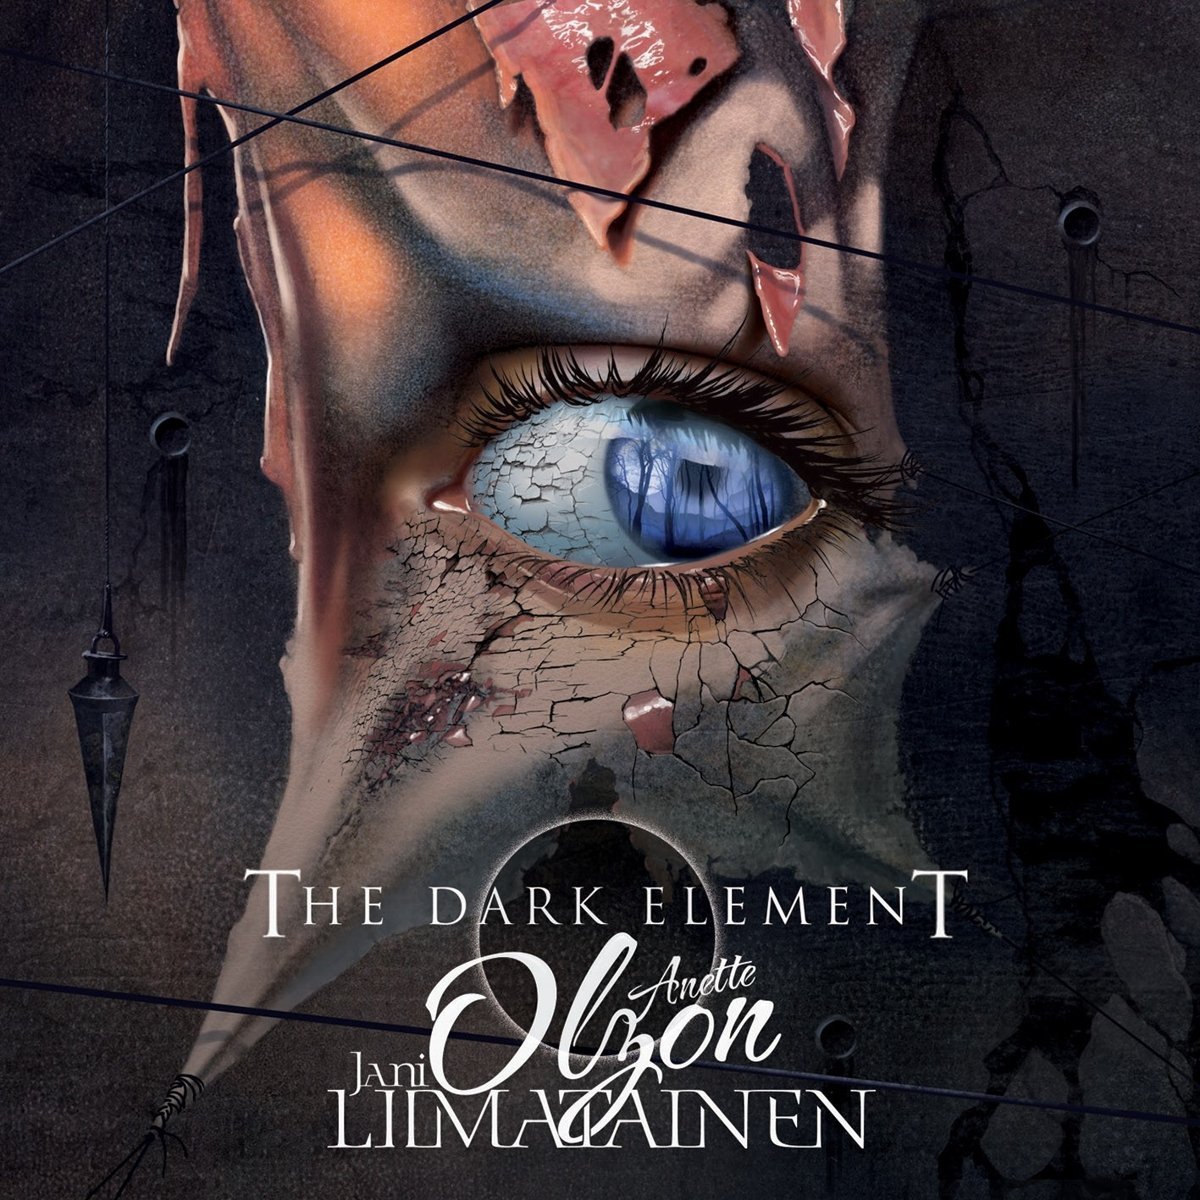 The Dark Element – feat. Jani Liimatainen & Anette Olzon